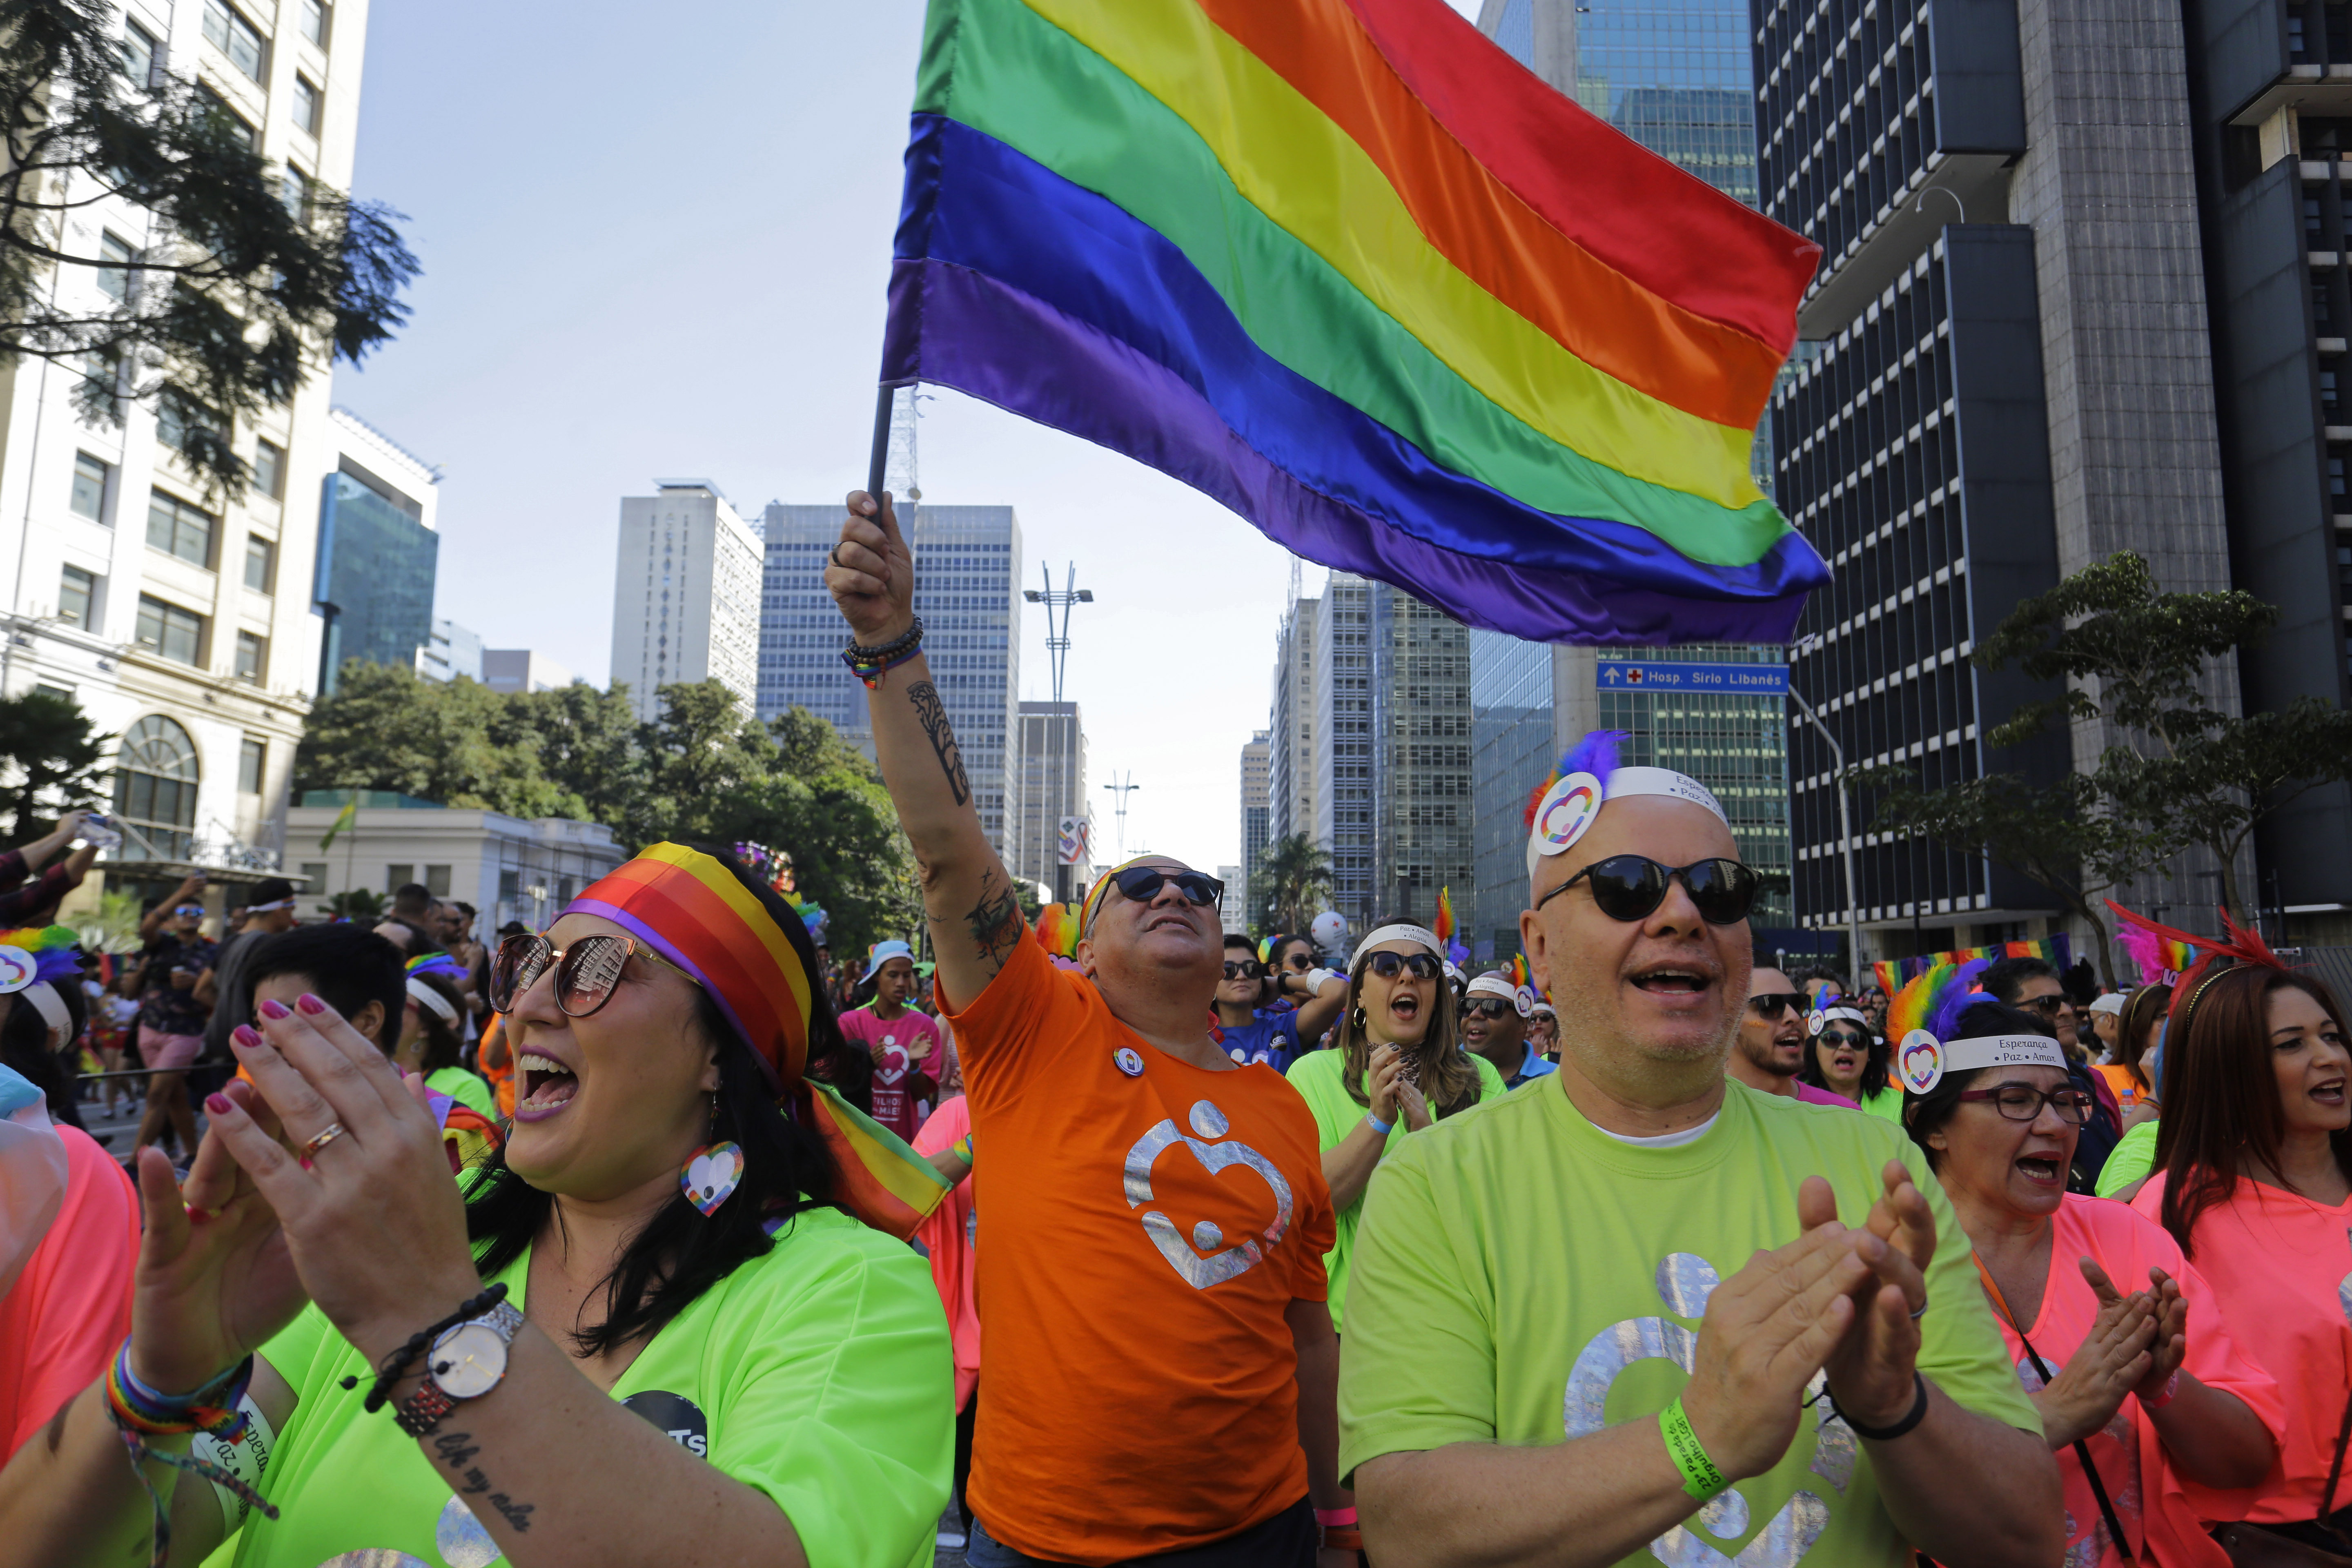 Pride Parade in Sao Paulo